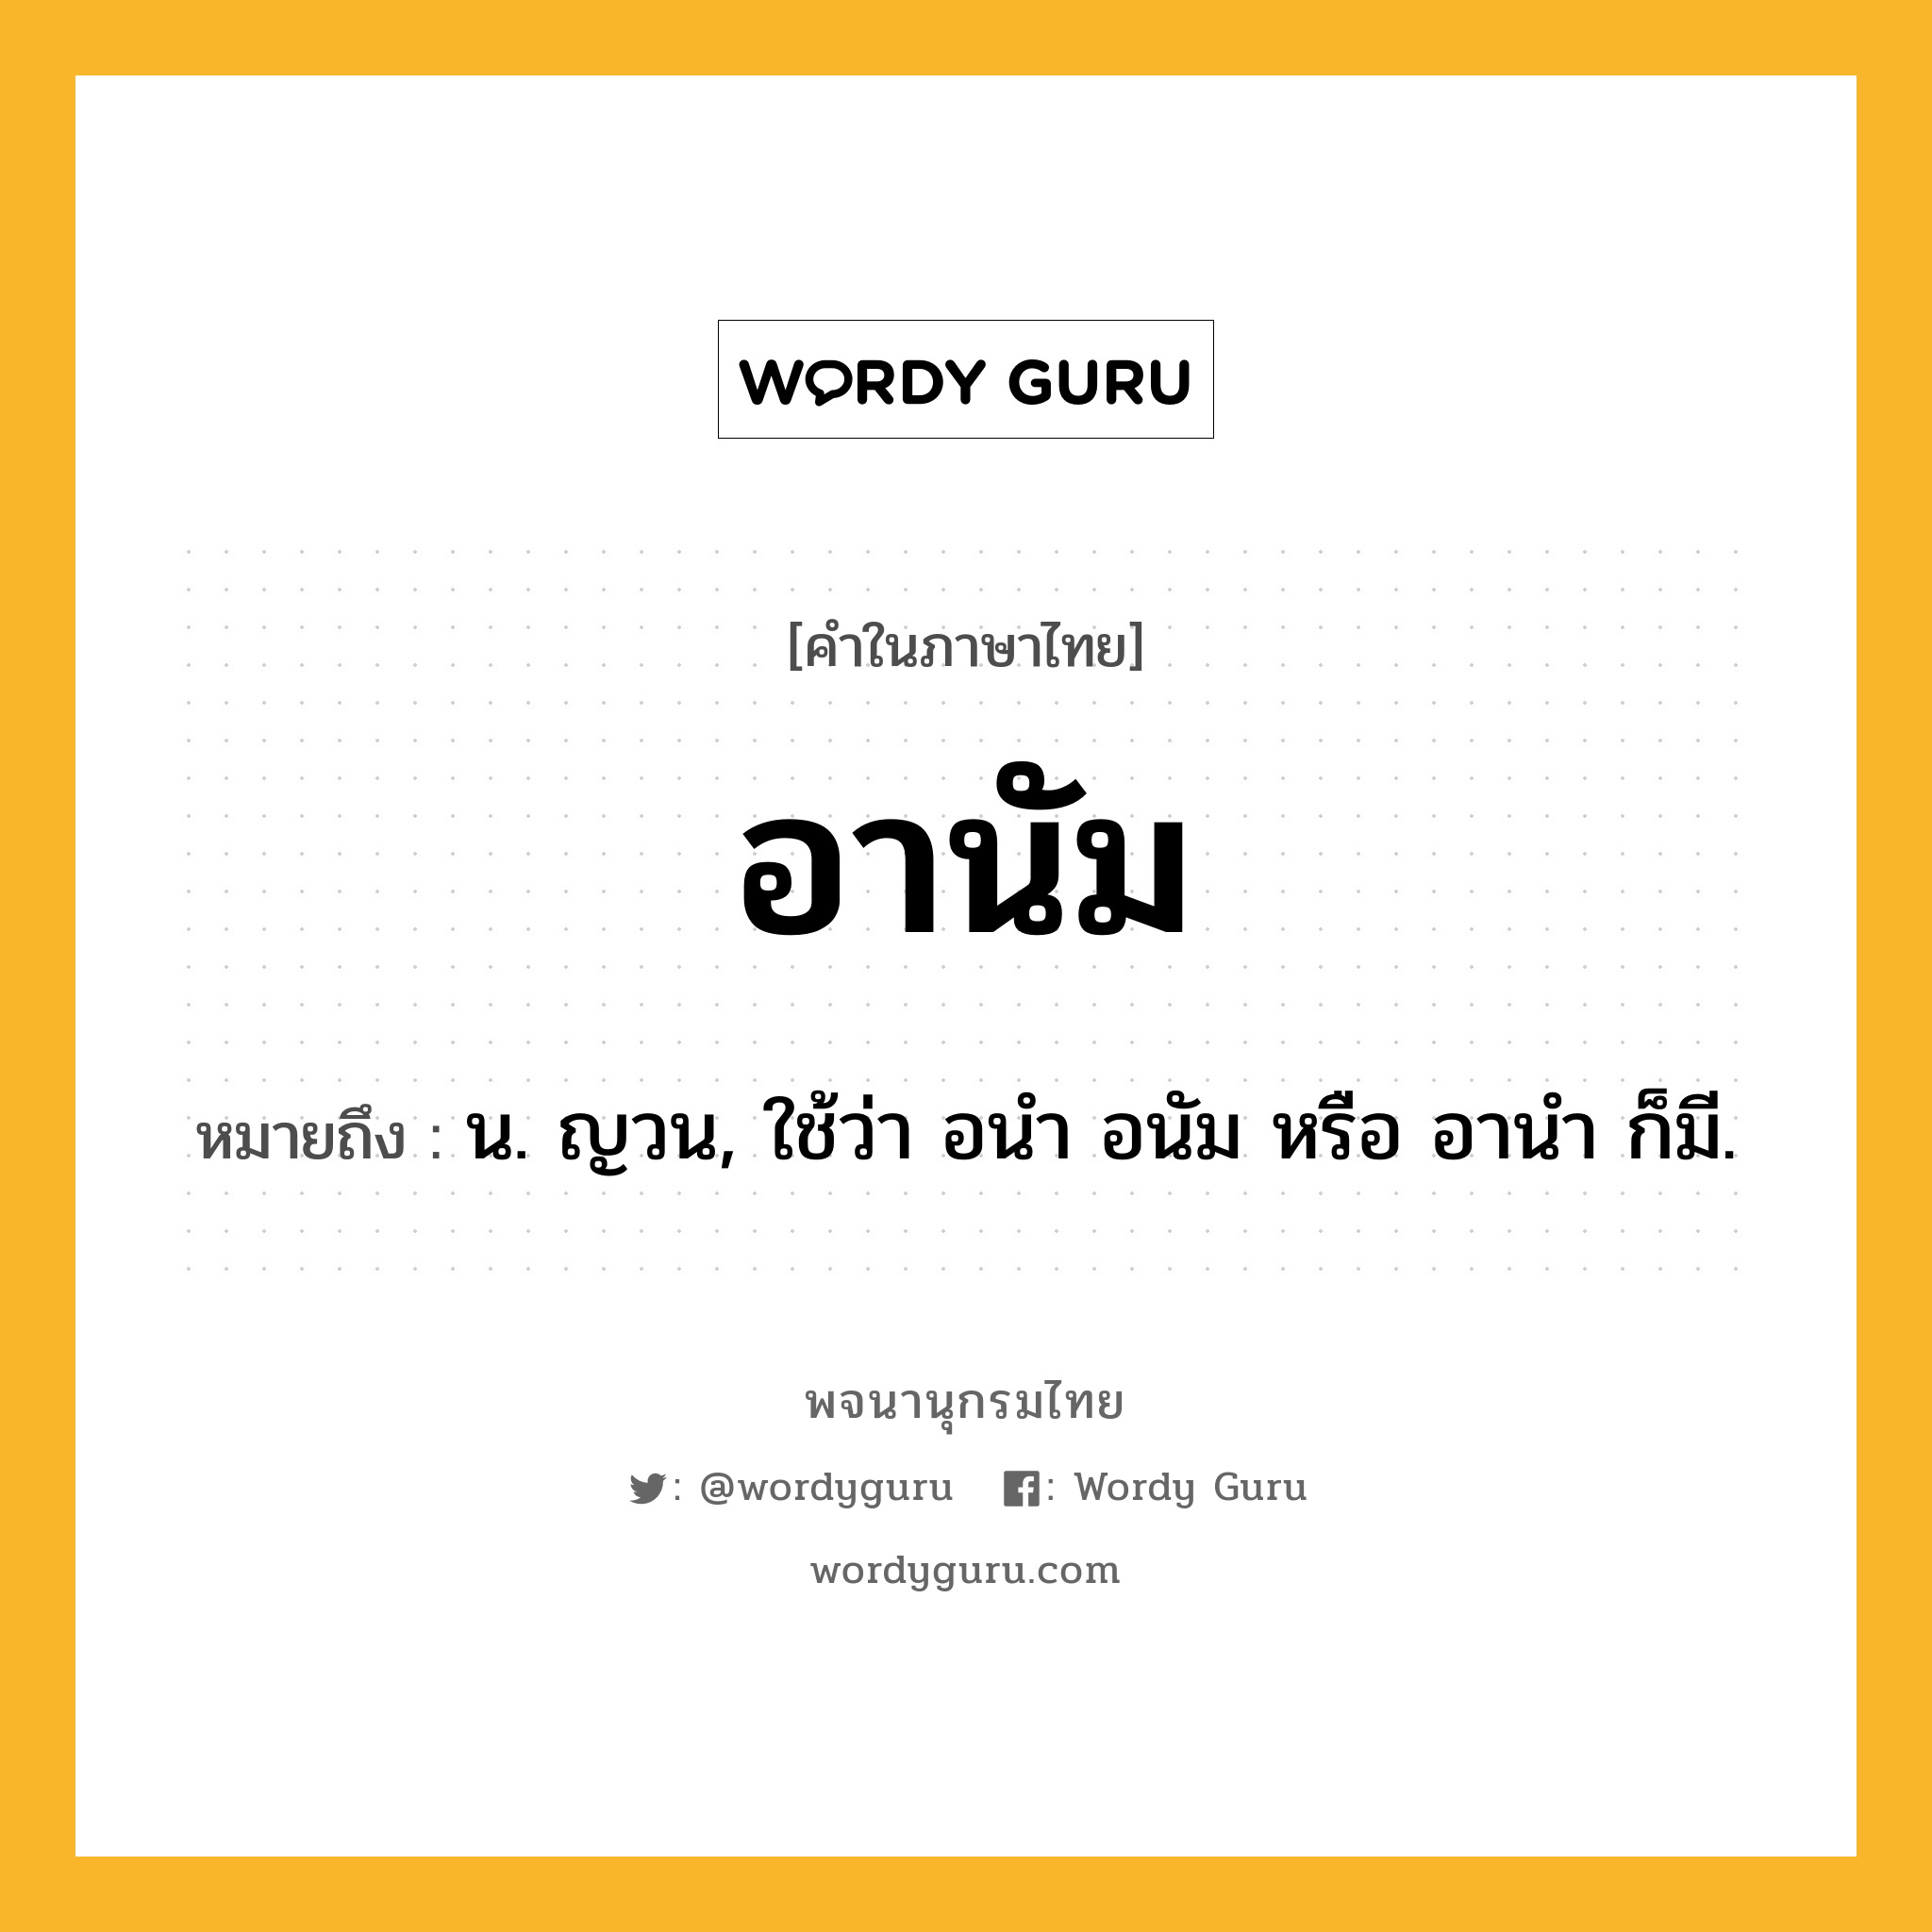 อานัม ความหมาย หมายถึงอะไร?, คำในภาษาไทย อานัม หมายถึง น. ญวน, ใช้ว่า อนํา อนัม หรือ อานํา ก็มี.